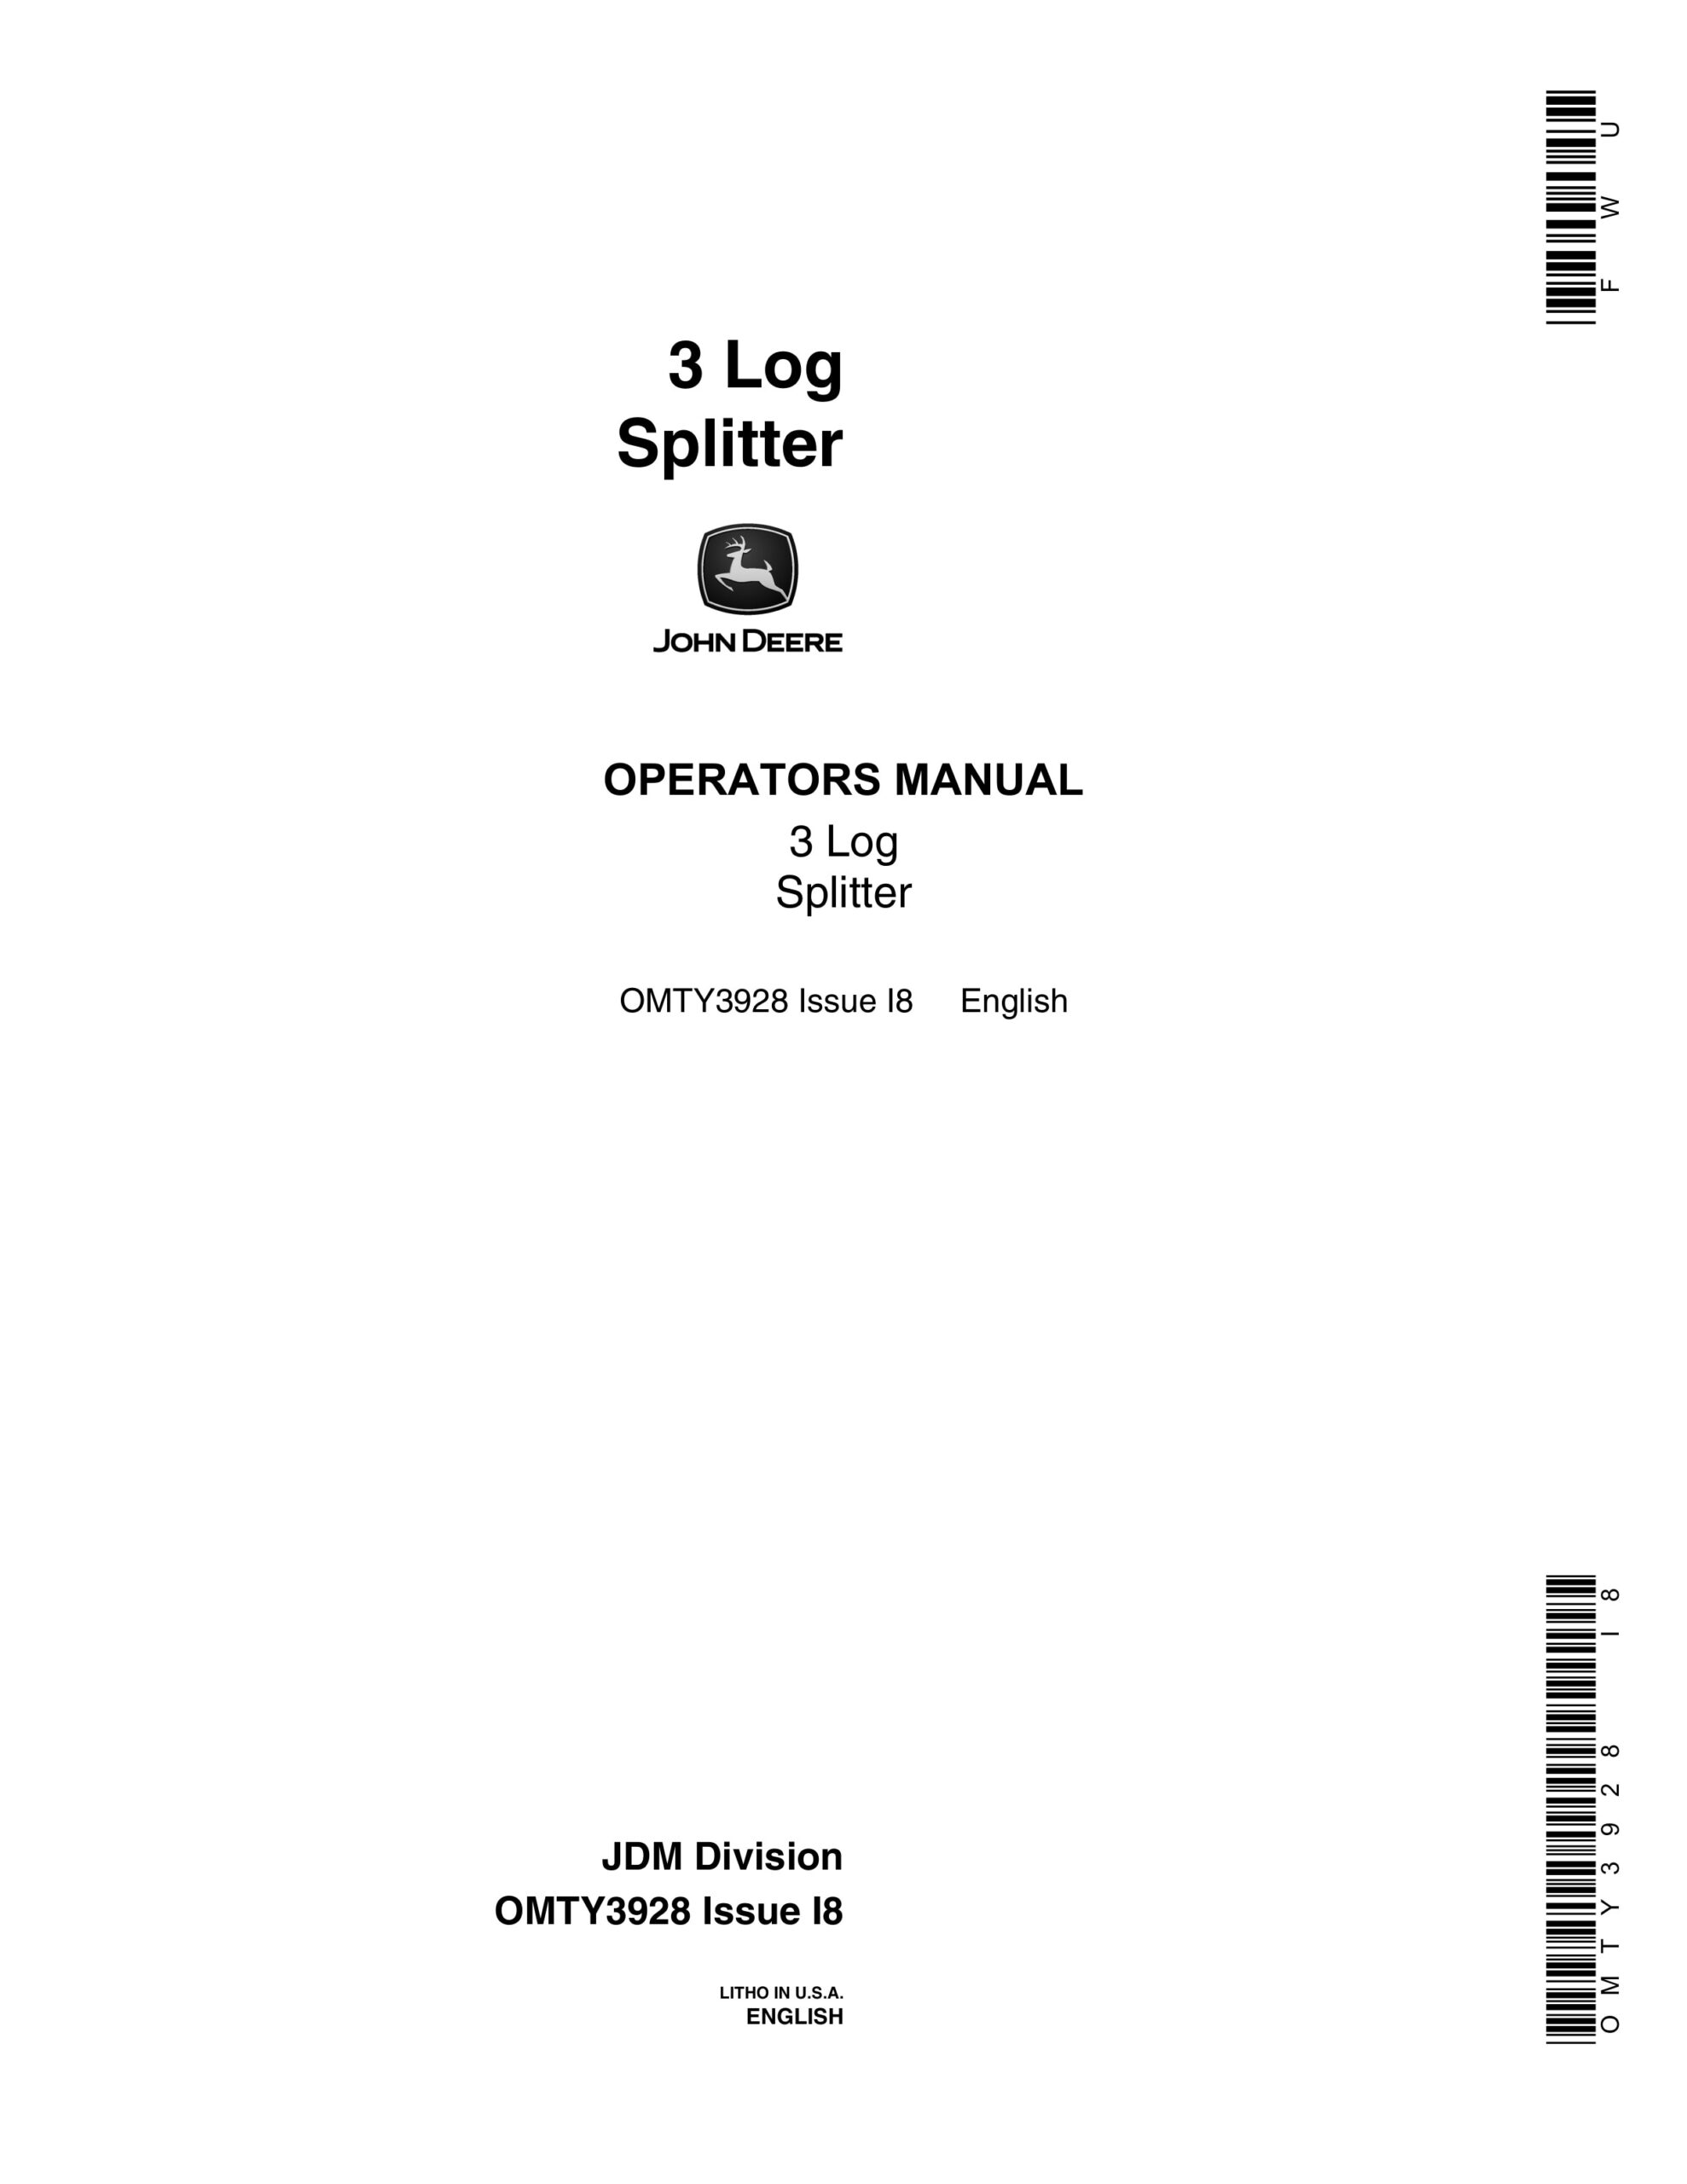 John Deere 3 Log SPLITTER Operator Manual OMTY3928-1